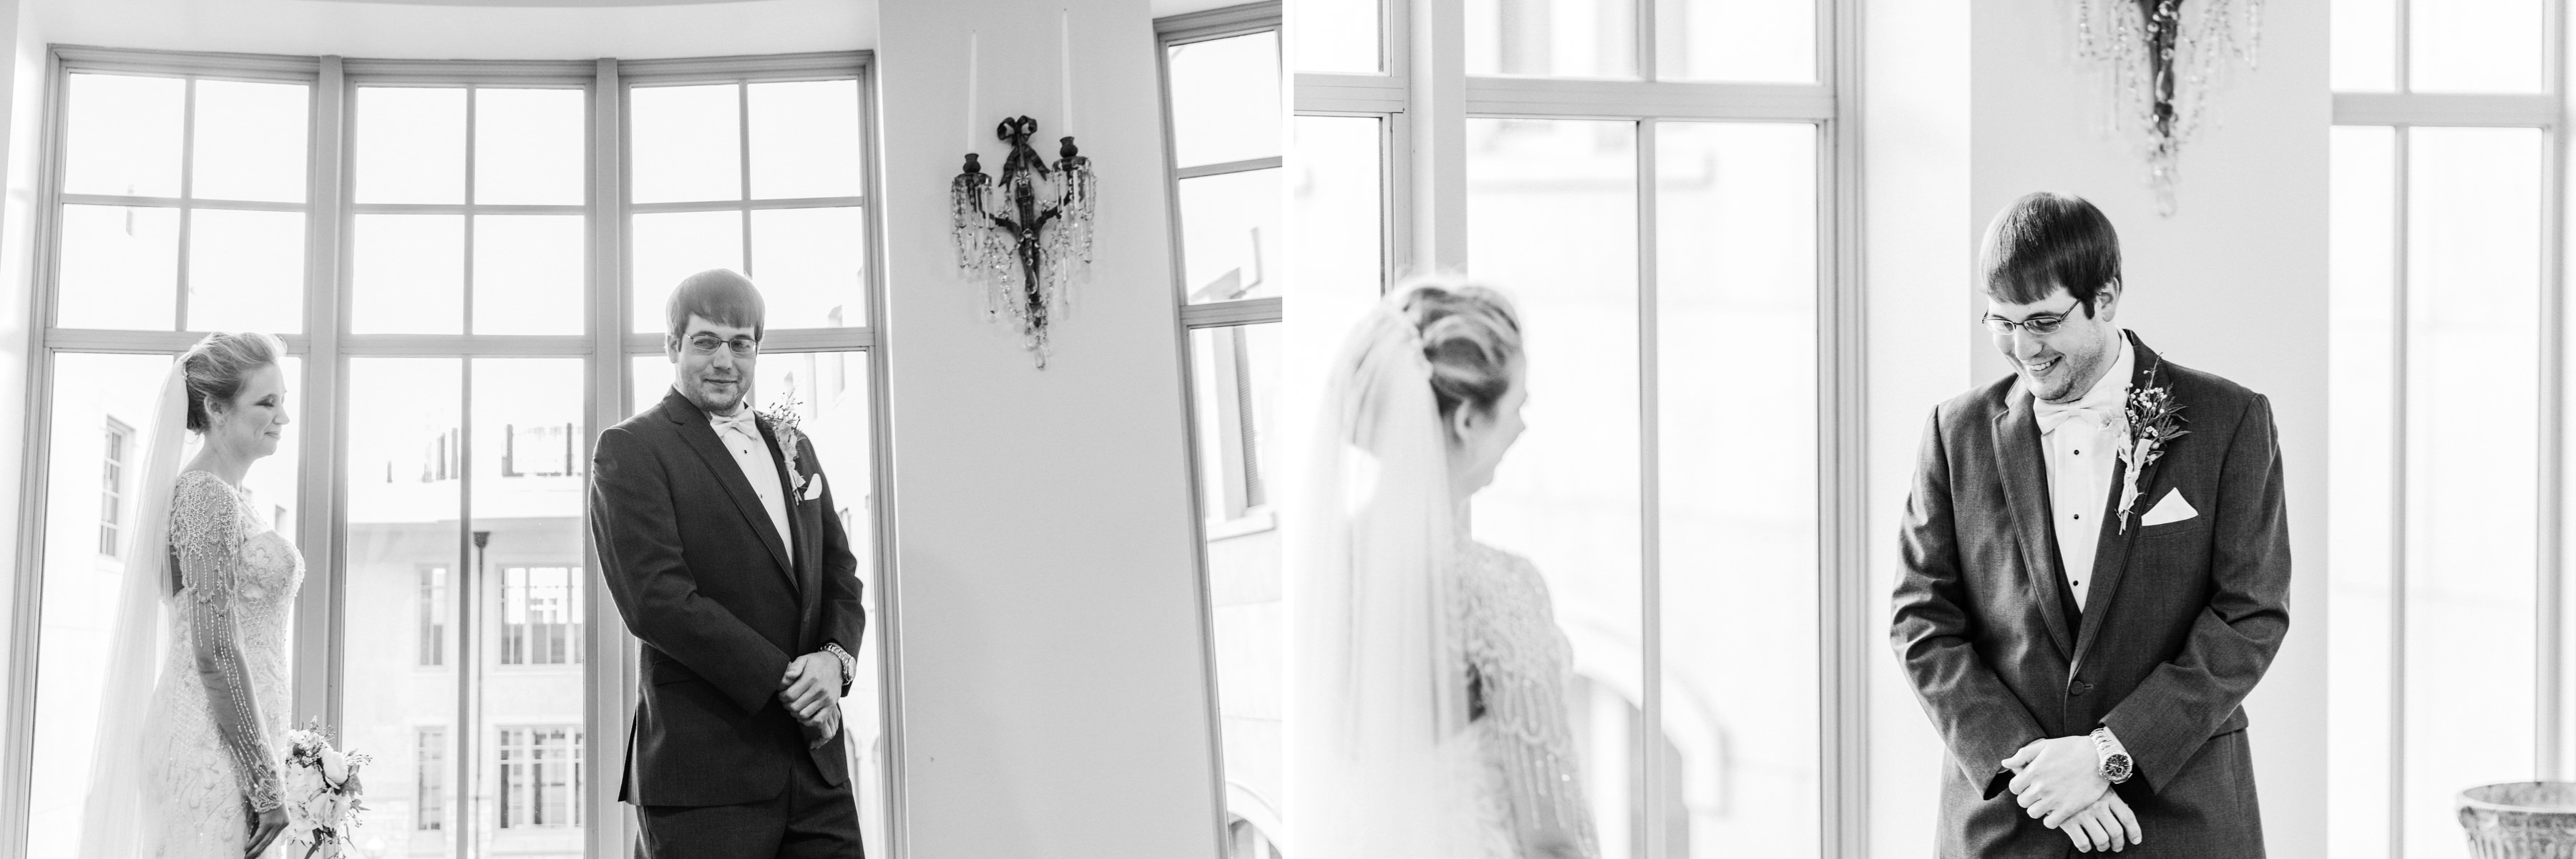 OAKLEY_WEDDING_MONTGOMERY_ALABAMA_WEDDING_PHOTOGRAPHY_34